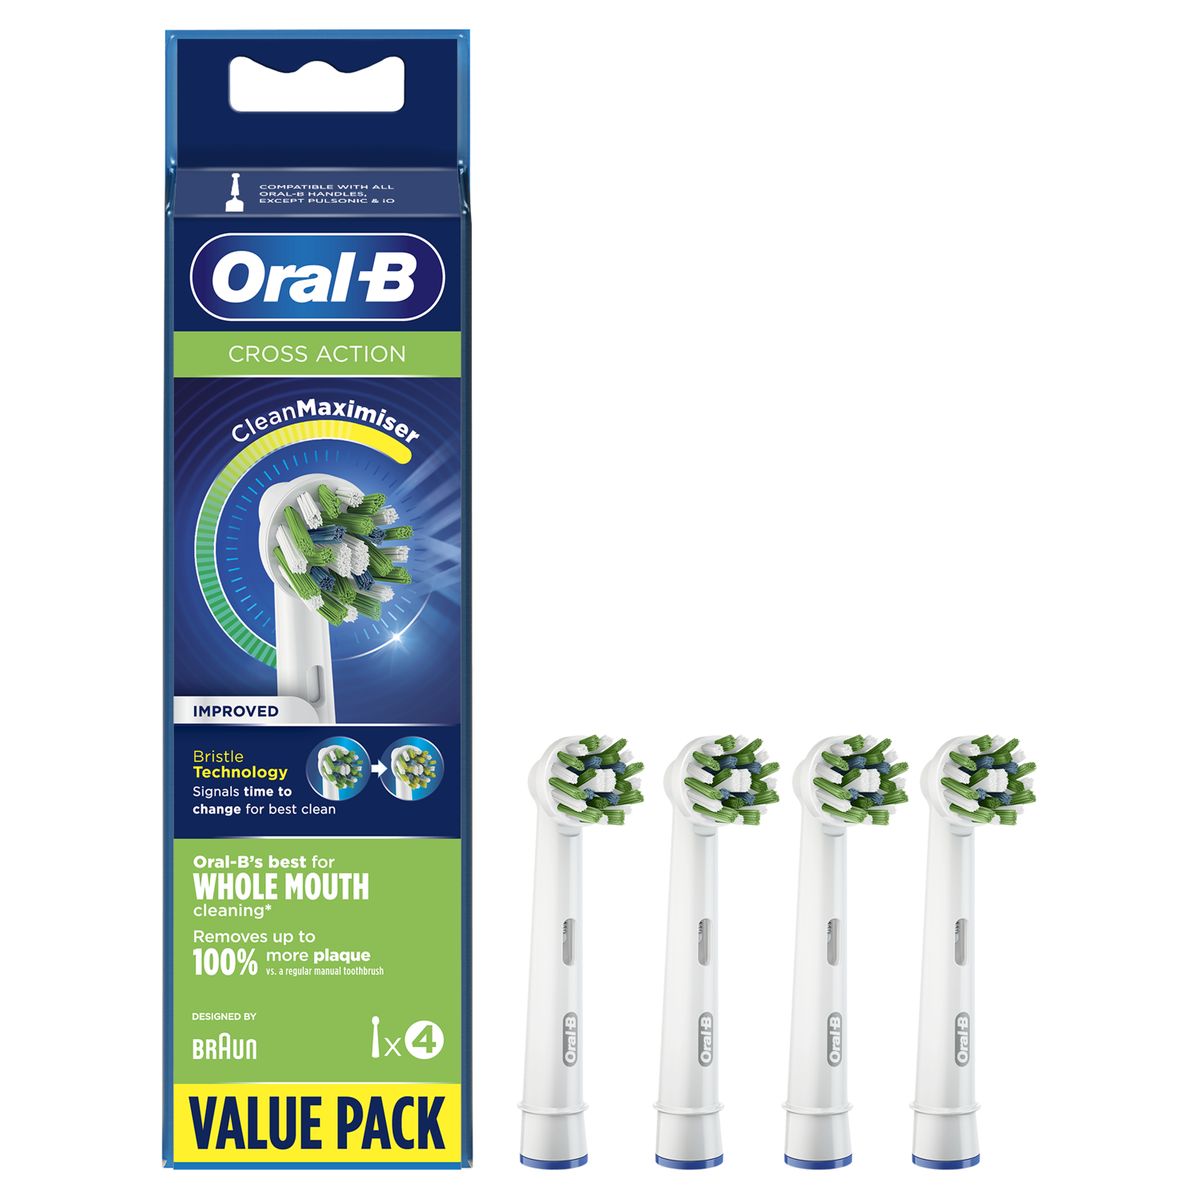 Oral-B CrossAction Aufsteckbürsten für elektrische Zahnbürste mit CleanMaximiserTechnologie, 4 stück, (Pack of 4) 4 Stück (1er Pack)